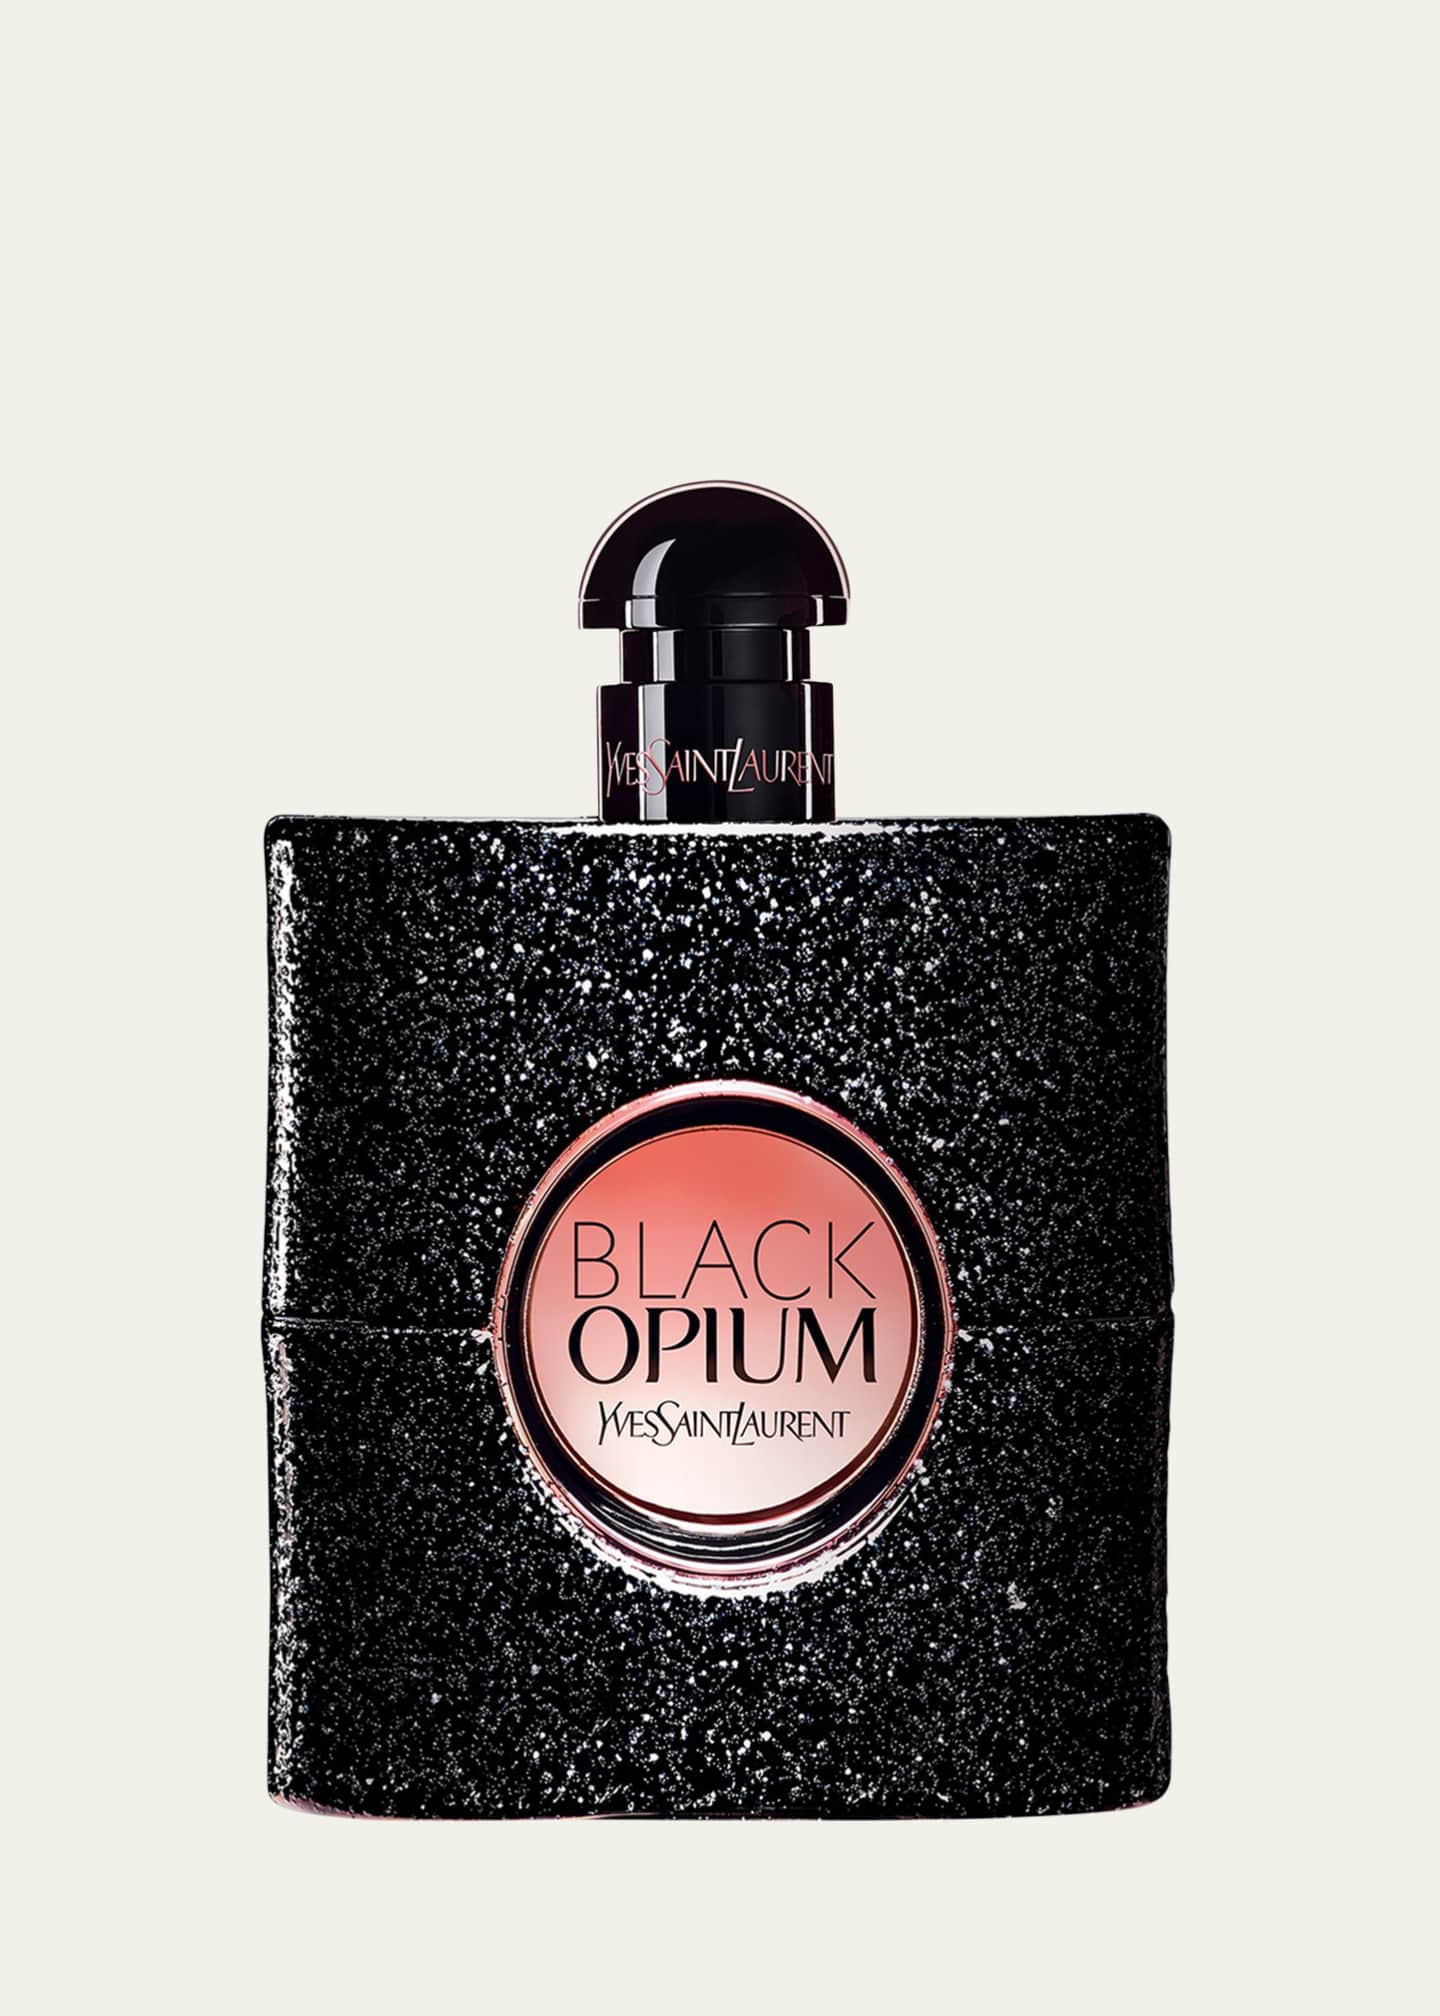 Black Opium Eau de Parfum Travel Size Perfume - Yves Saint Laurent